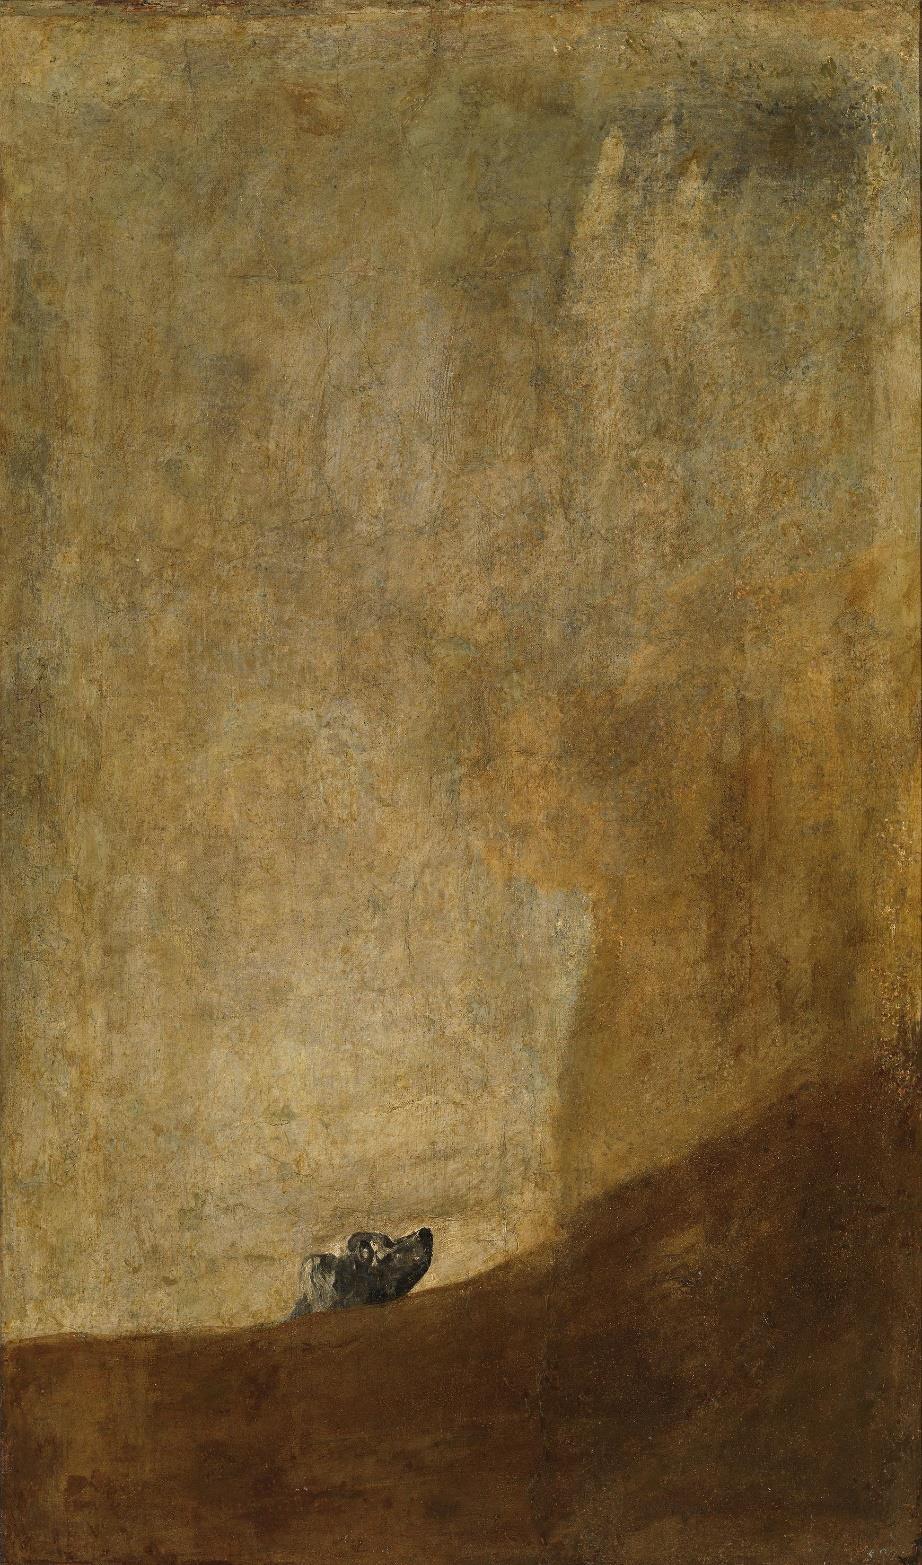 Goya (1819-1823)